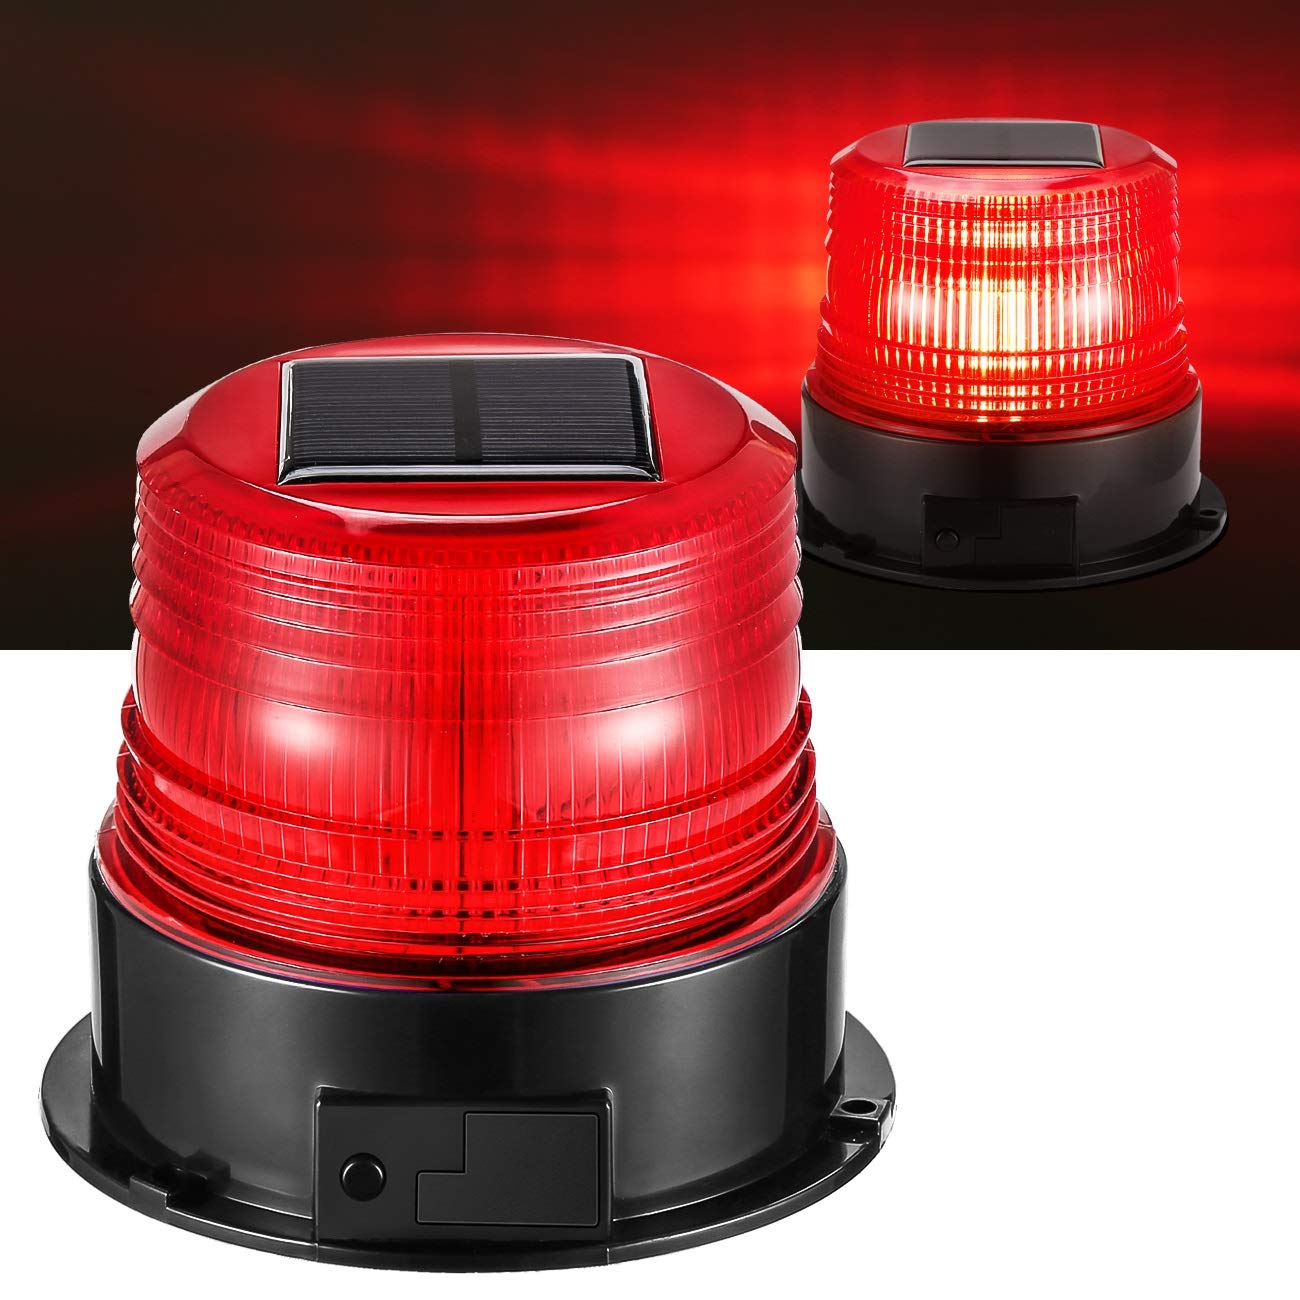 LED-Rundumkennleuchte,Solarenergie LED Stroboskoplicht mit Magnetfuß für Auto Anhänger Wohnwagen SUV – Rot, Drehen, gleichmäßiges Brennen 4 verschiedene Modi von antom